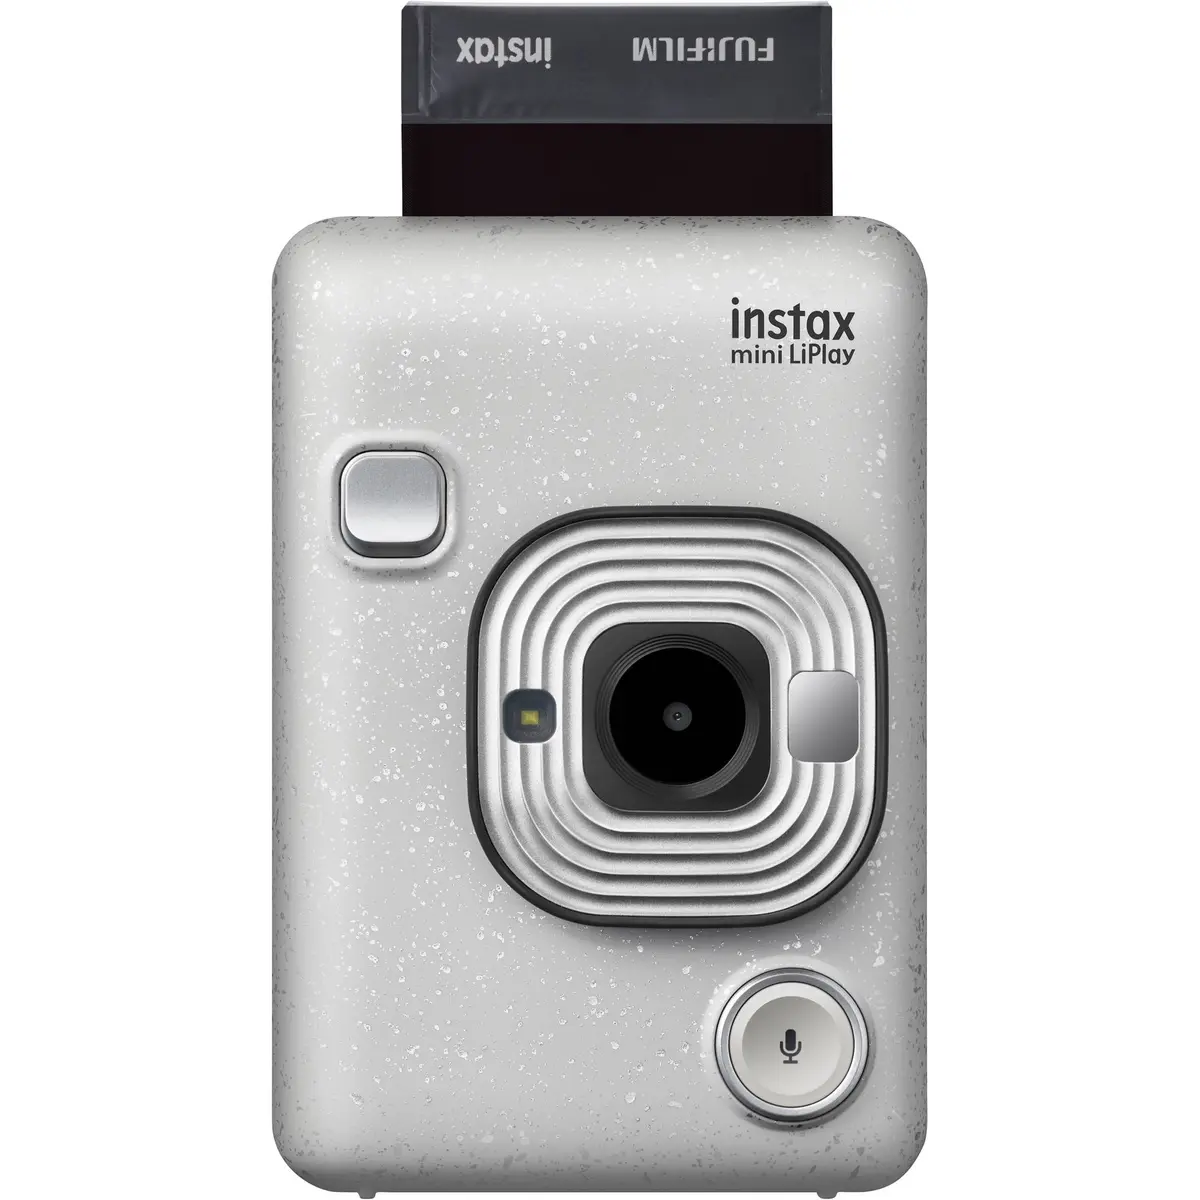 4. Fujifilm instax mini LiPlay (White)